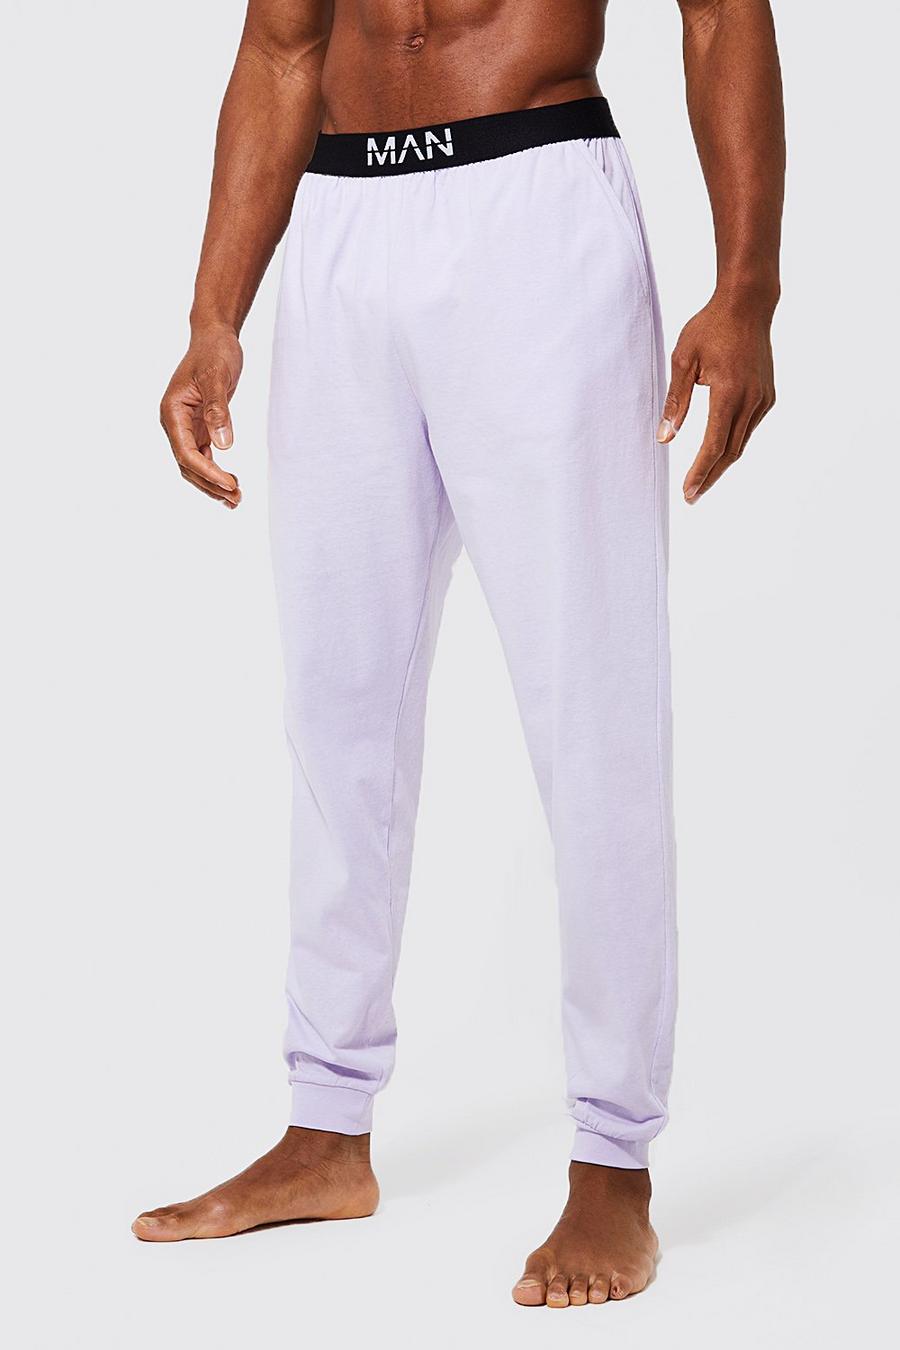 Lilac violett Core Man Dash Loungewear Pants